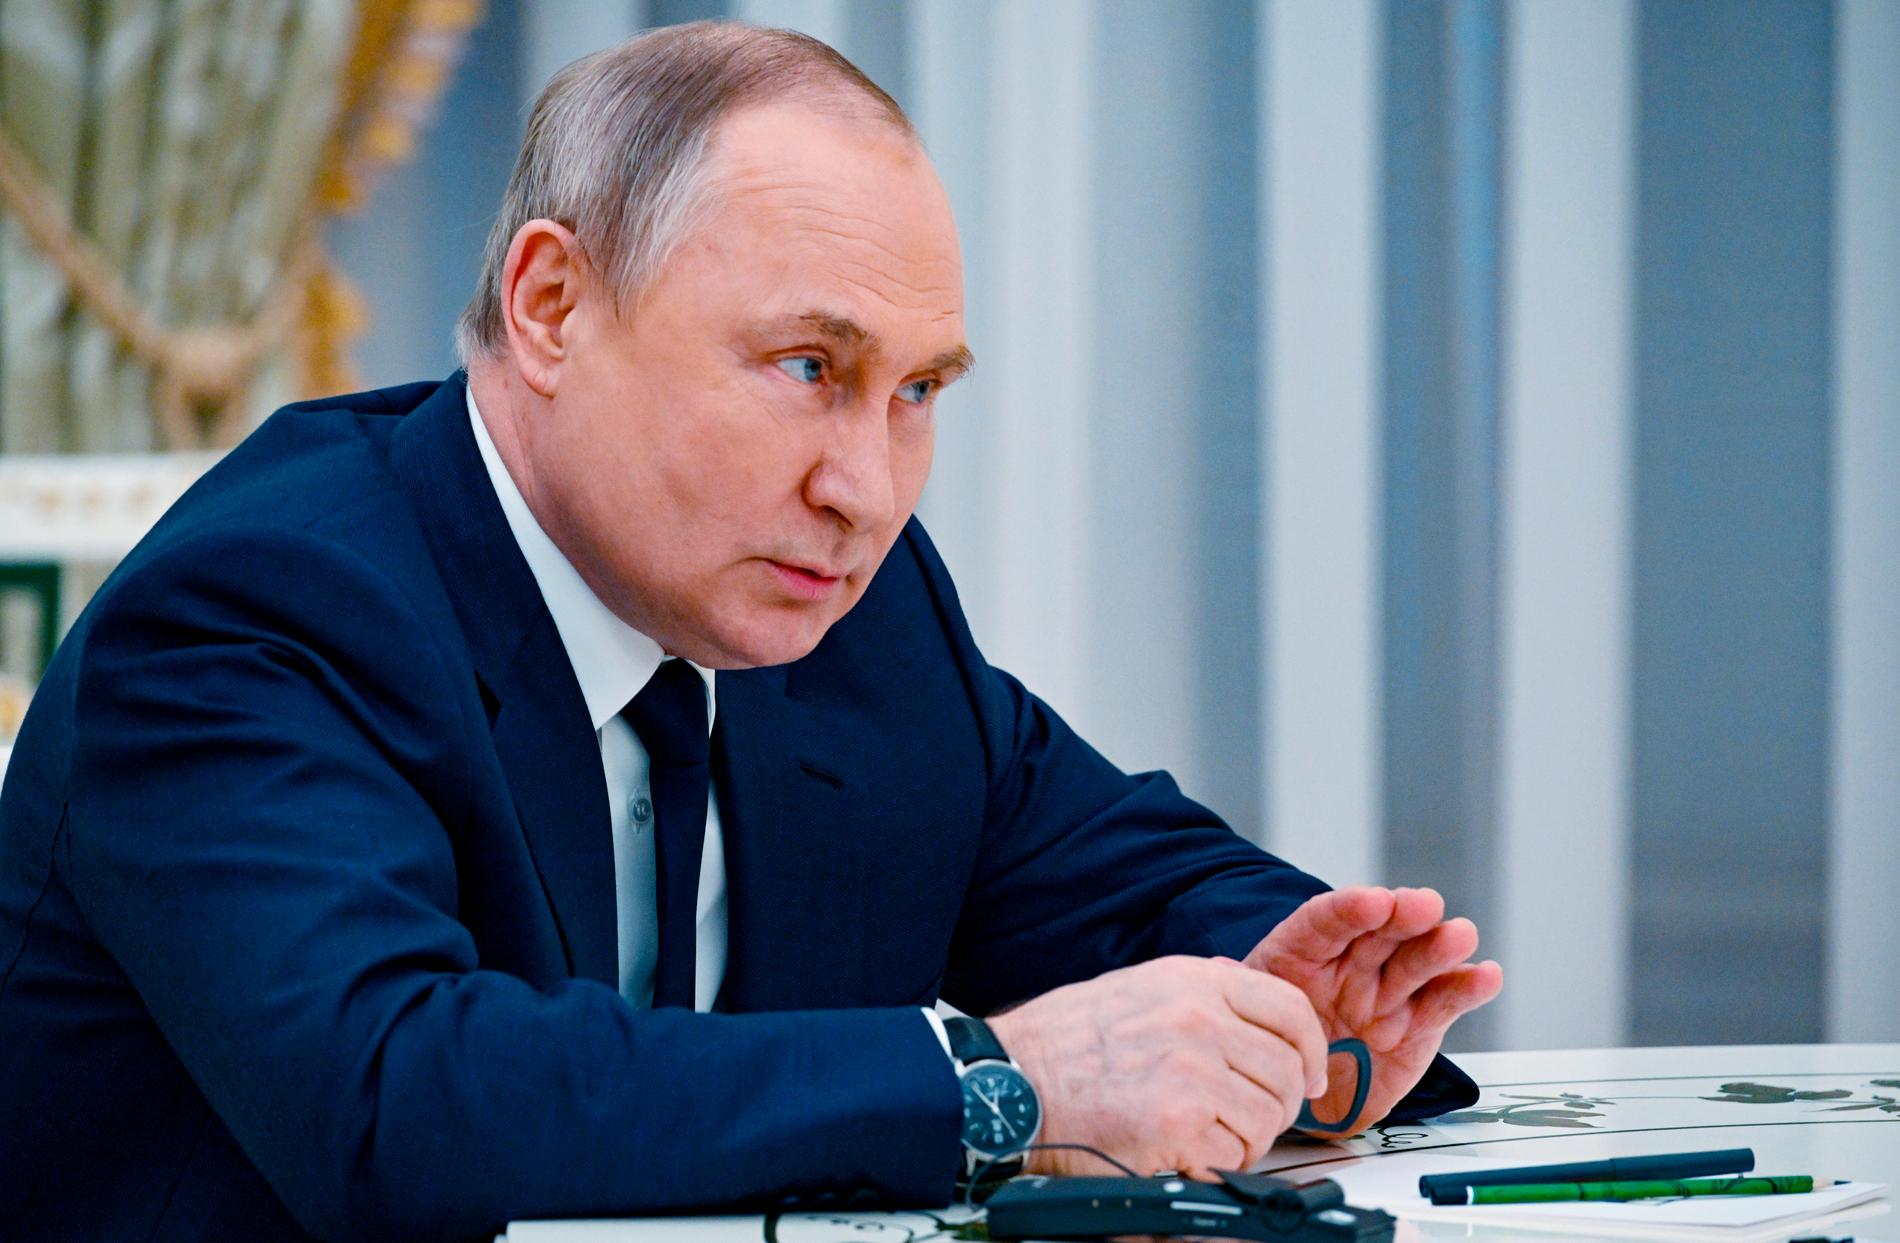 Le richieste di gas di Putin creano difficoltà ai Paesi Ue – VG